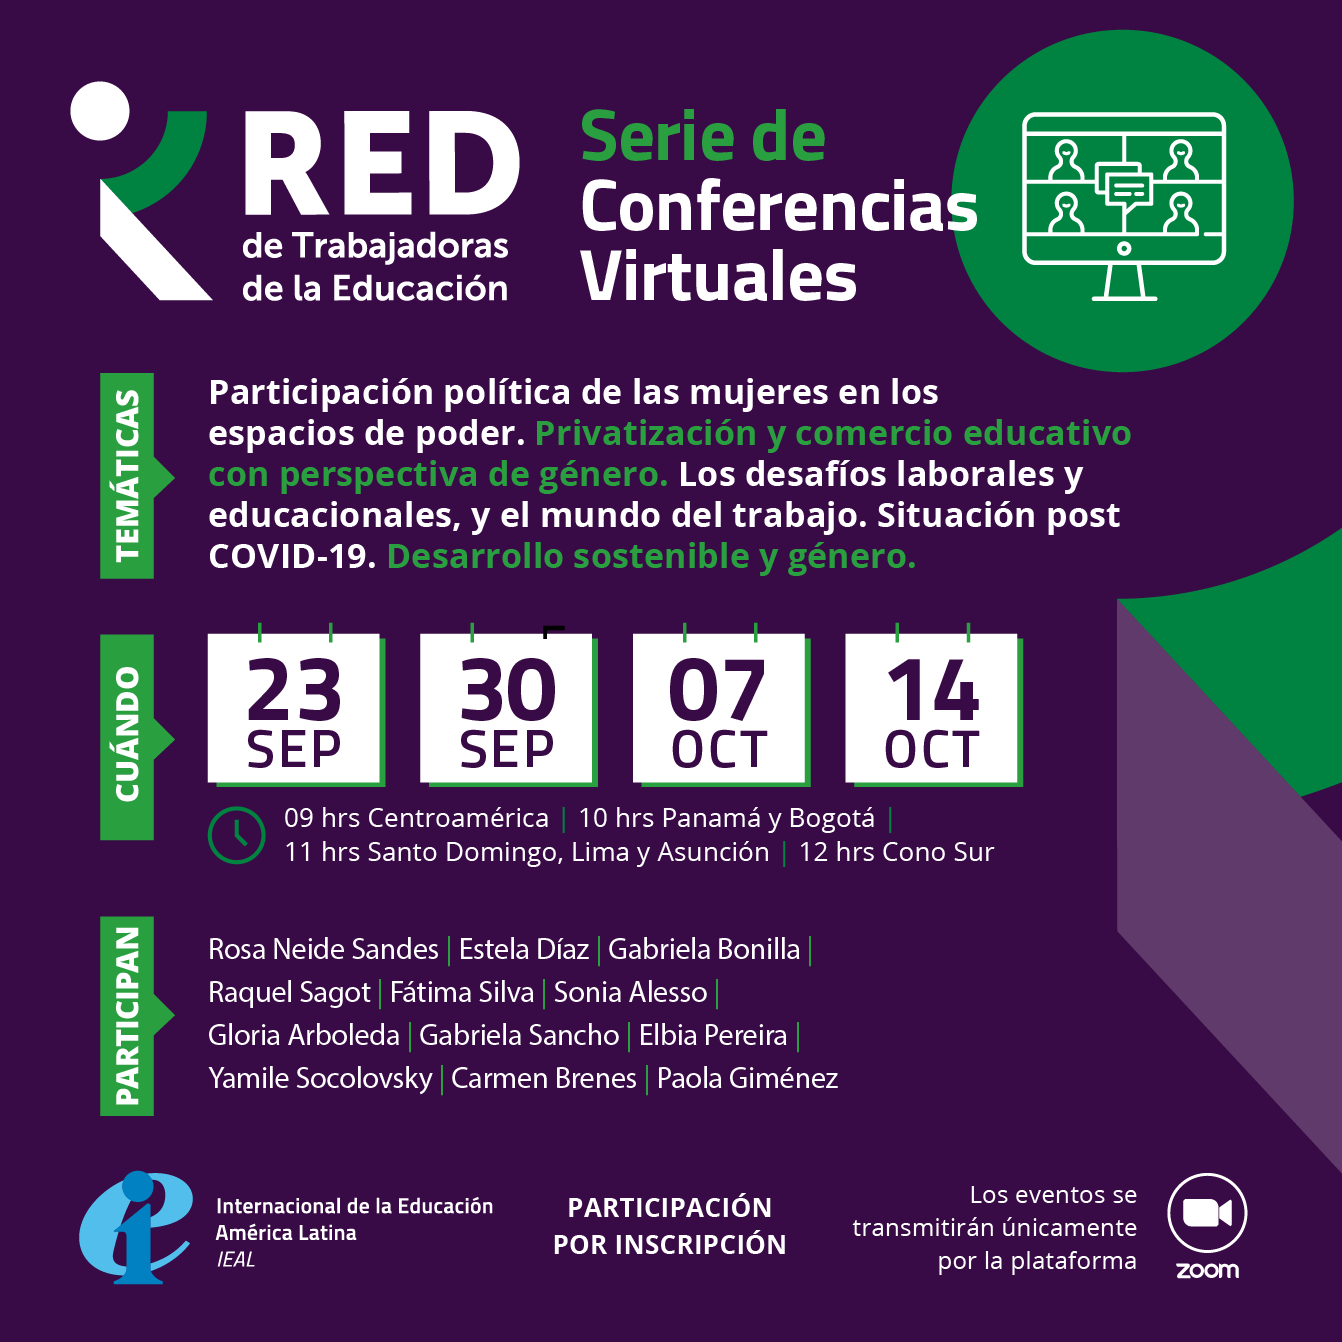 RED de Trabajadoras de la Educación realizará conferencias virtuales 